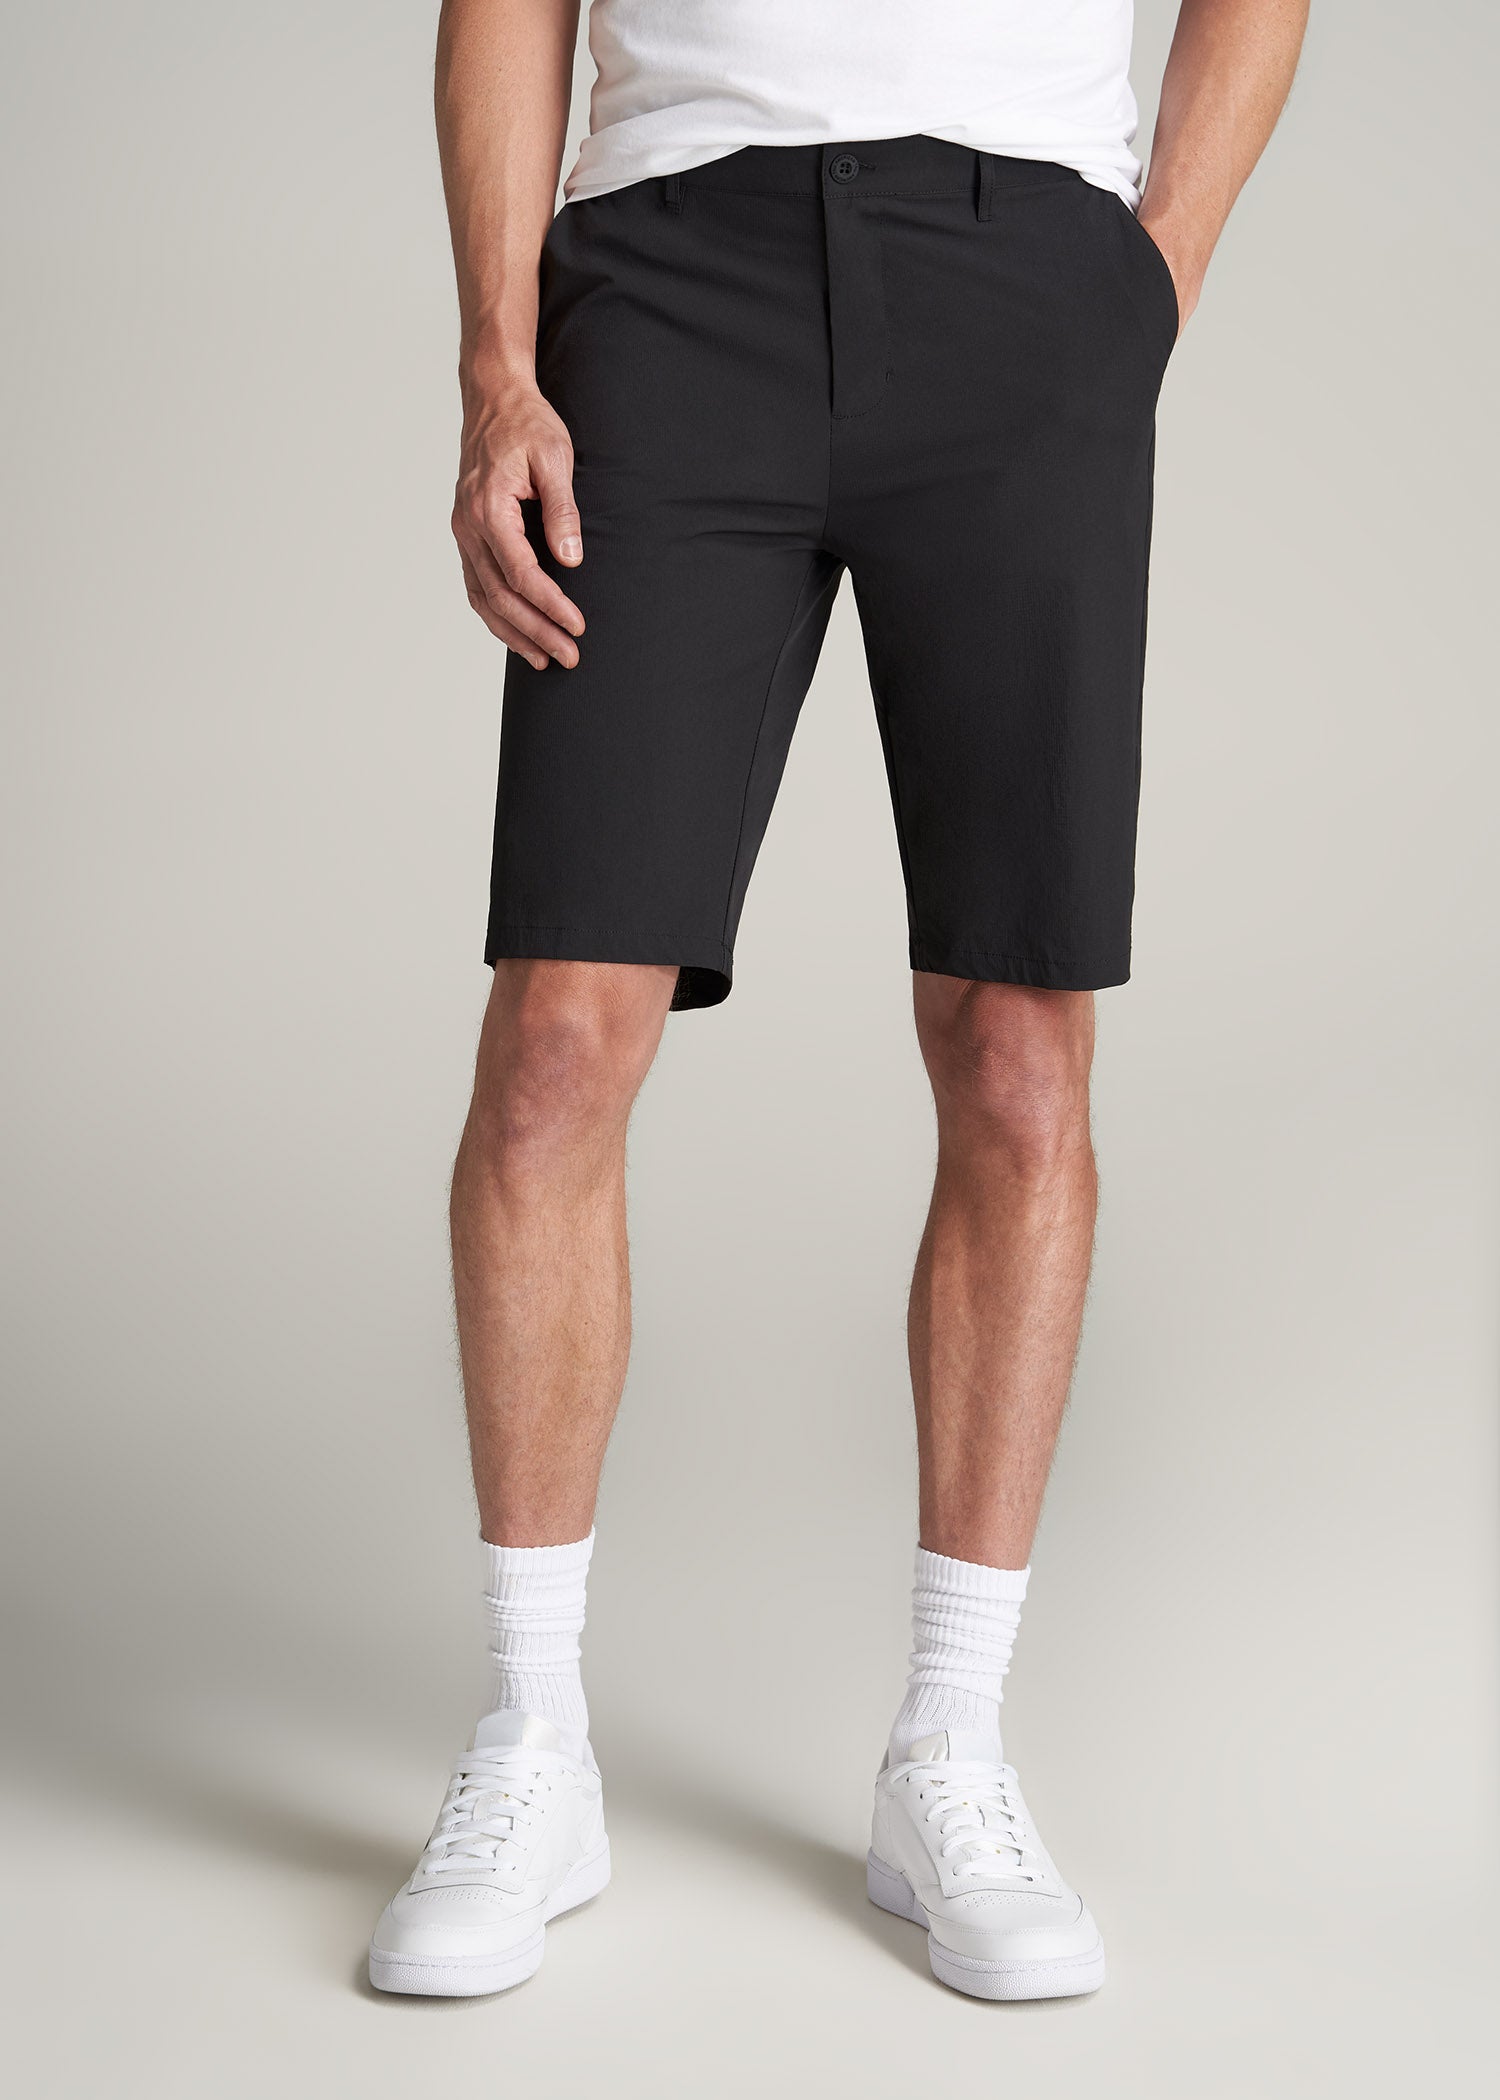 Premium Hybrid Shorts for Tall Men in Black